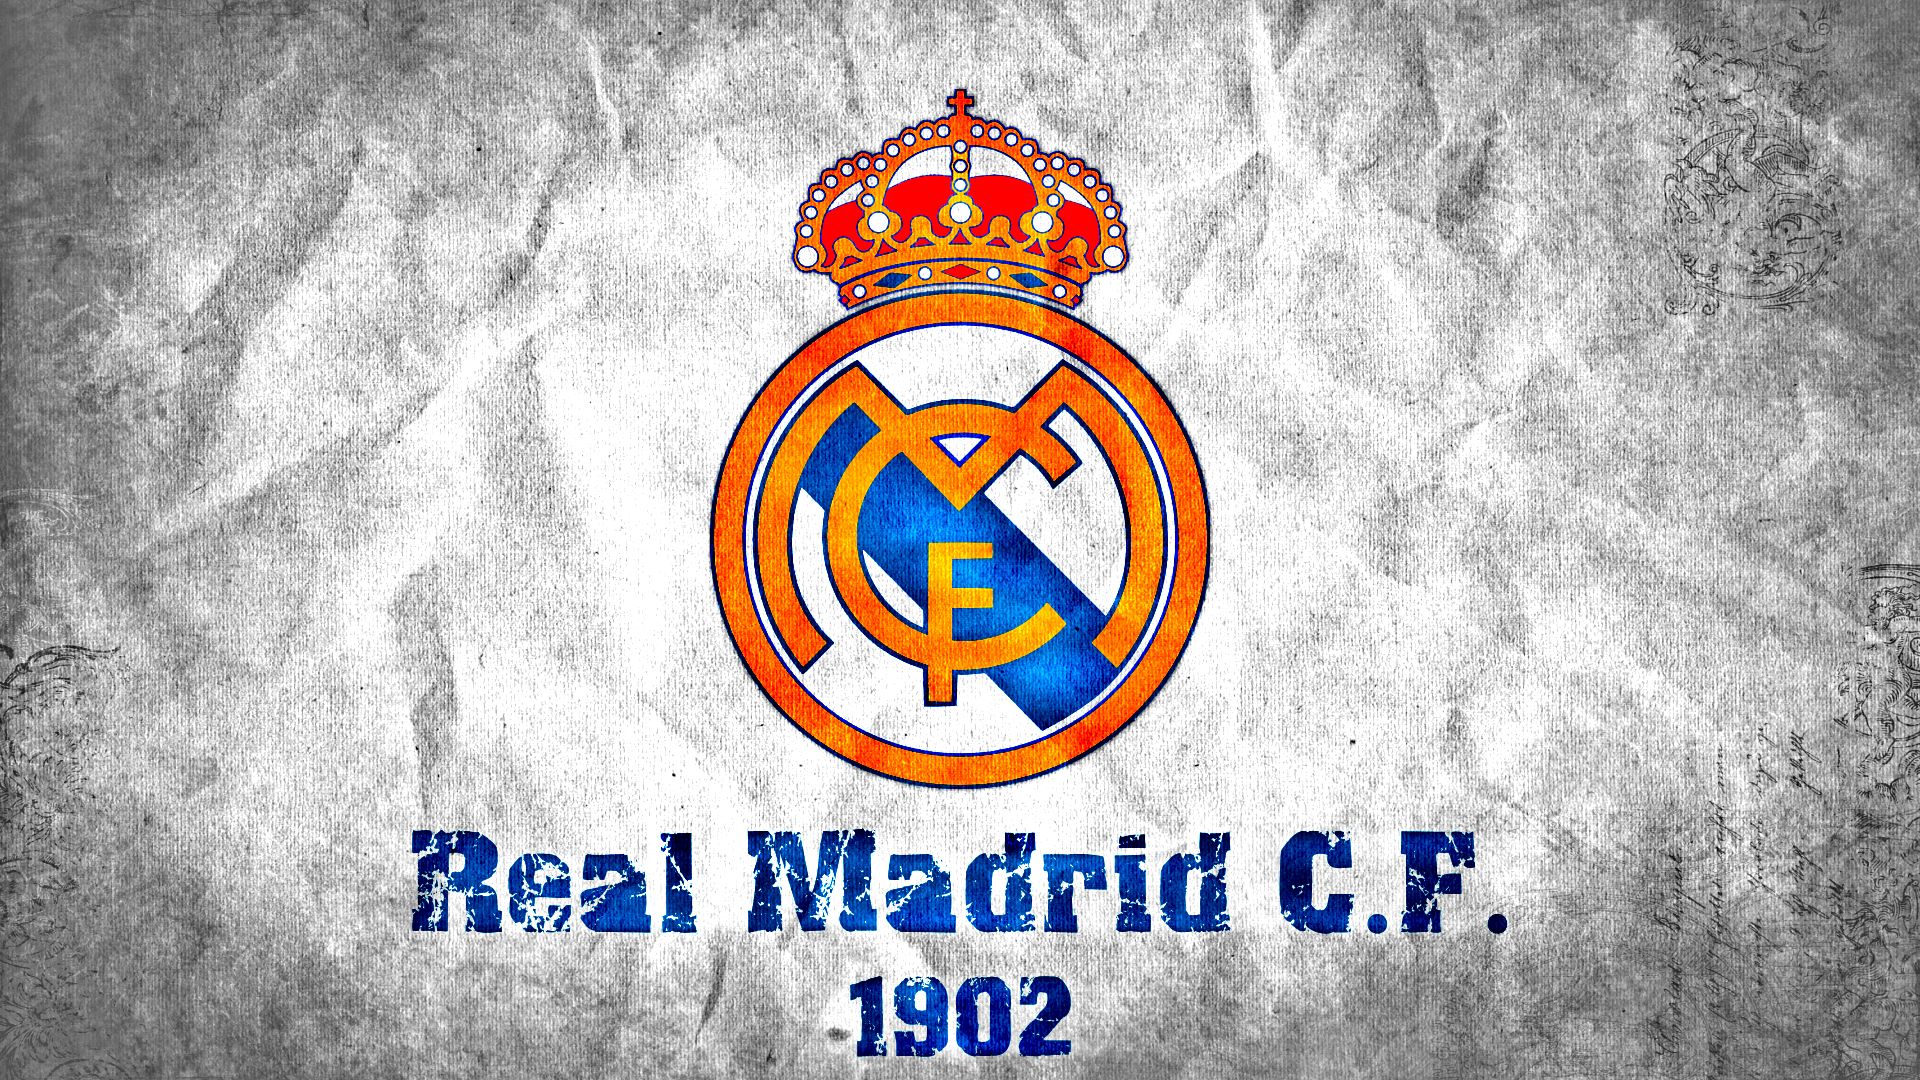 PCデスクトップにスポーツ, サッカー, ロゴ, 象徴, レアル・マドリード C F画像を無料でダウンロード